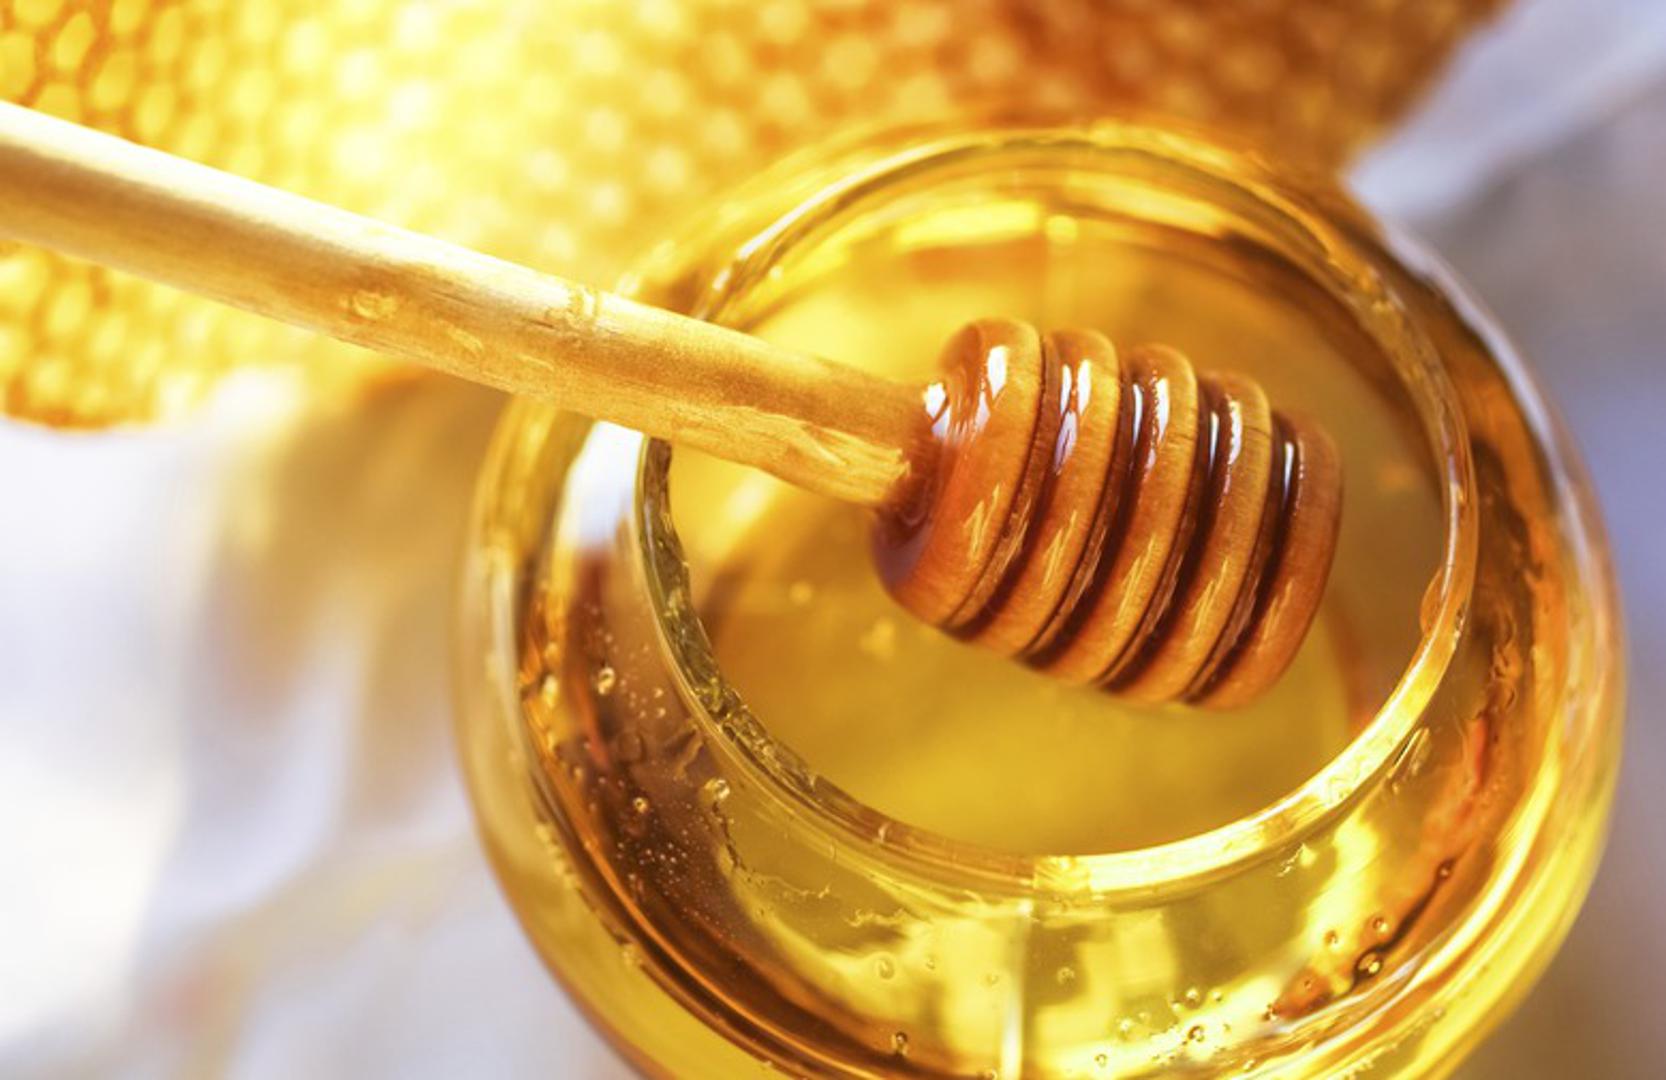 Med ima antibakterijska i protuupalna svojstva koja mogu pomoći ublažiti osjećaj pečenja. Stavite žlicu meda u usta i pričekajte malo prije nego što ga progutate. Ponovite dva do tri puta za trenutačno olakšanje.